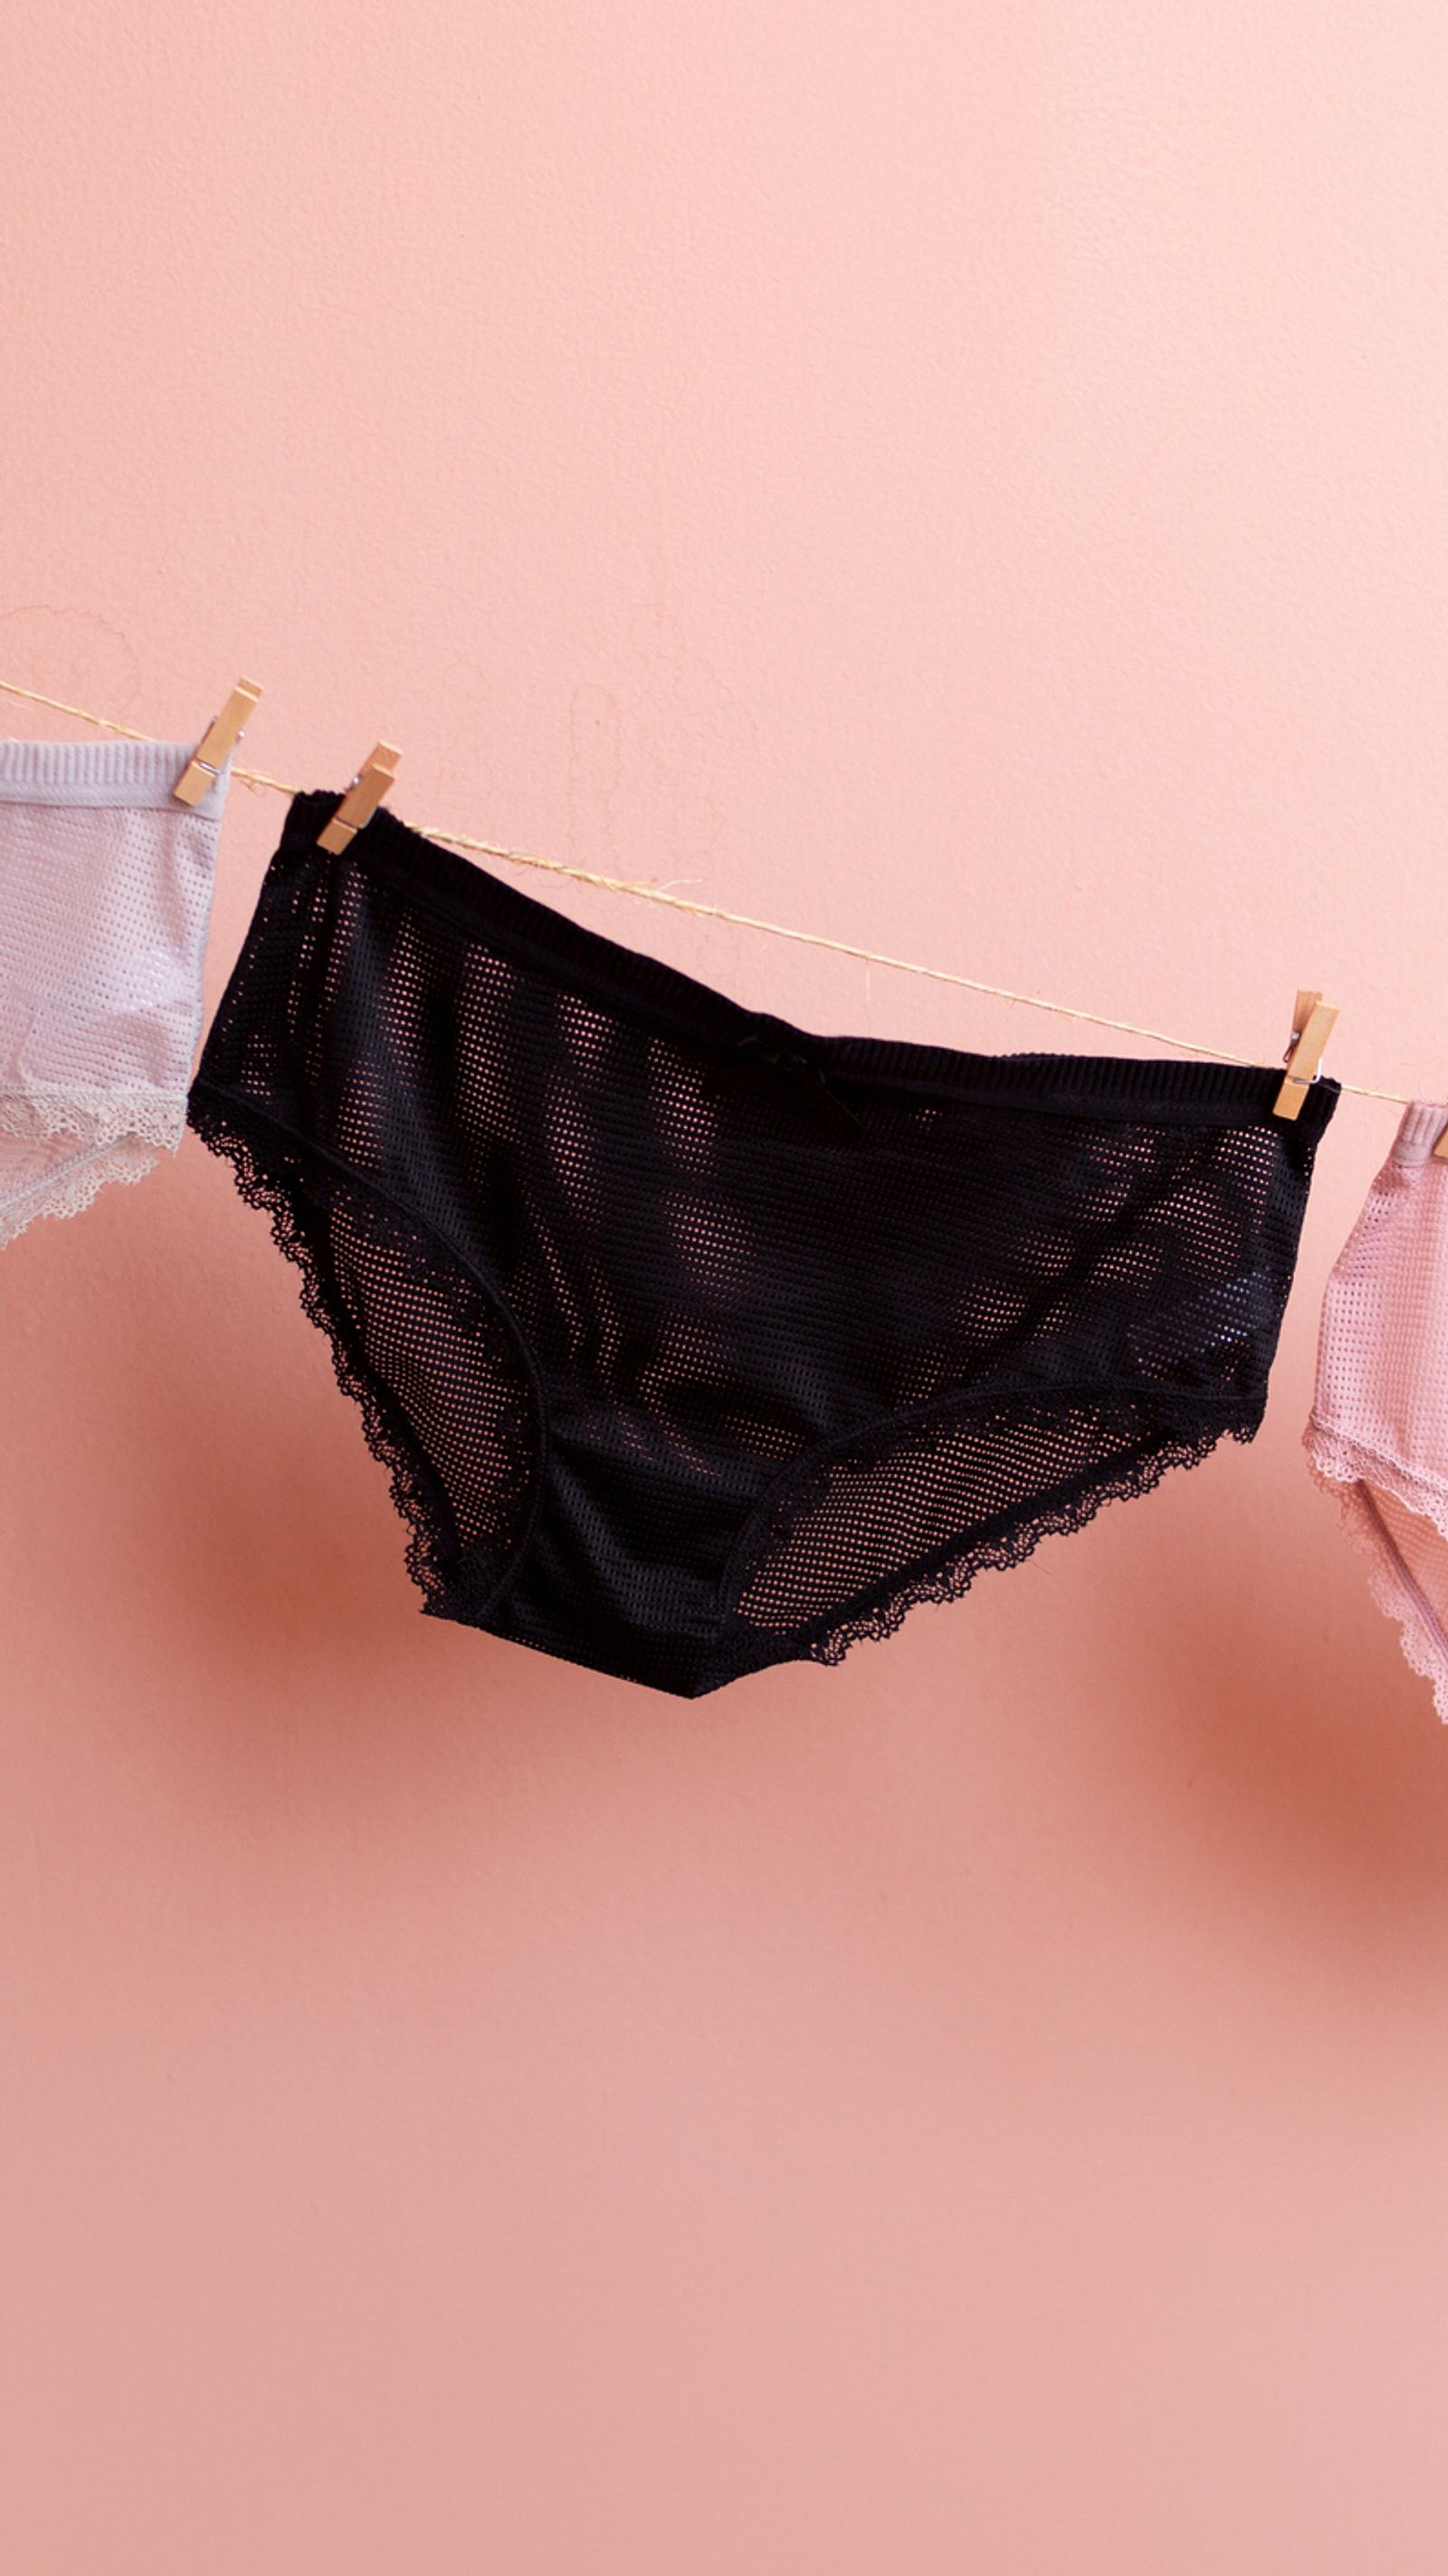 Nahtlose Unterwäsche: So unsichtbar kann dein BH und Slip sein